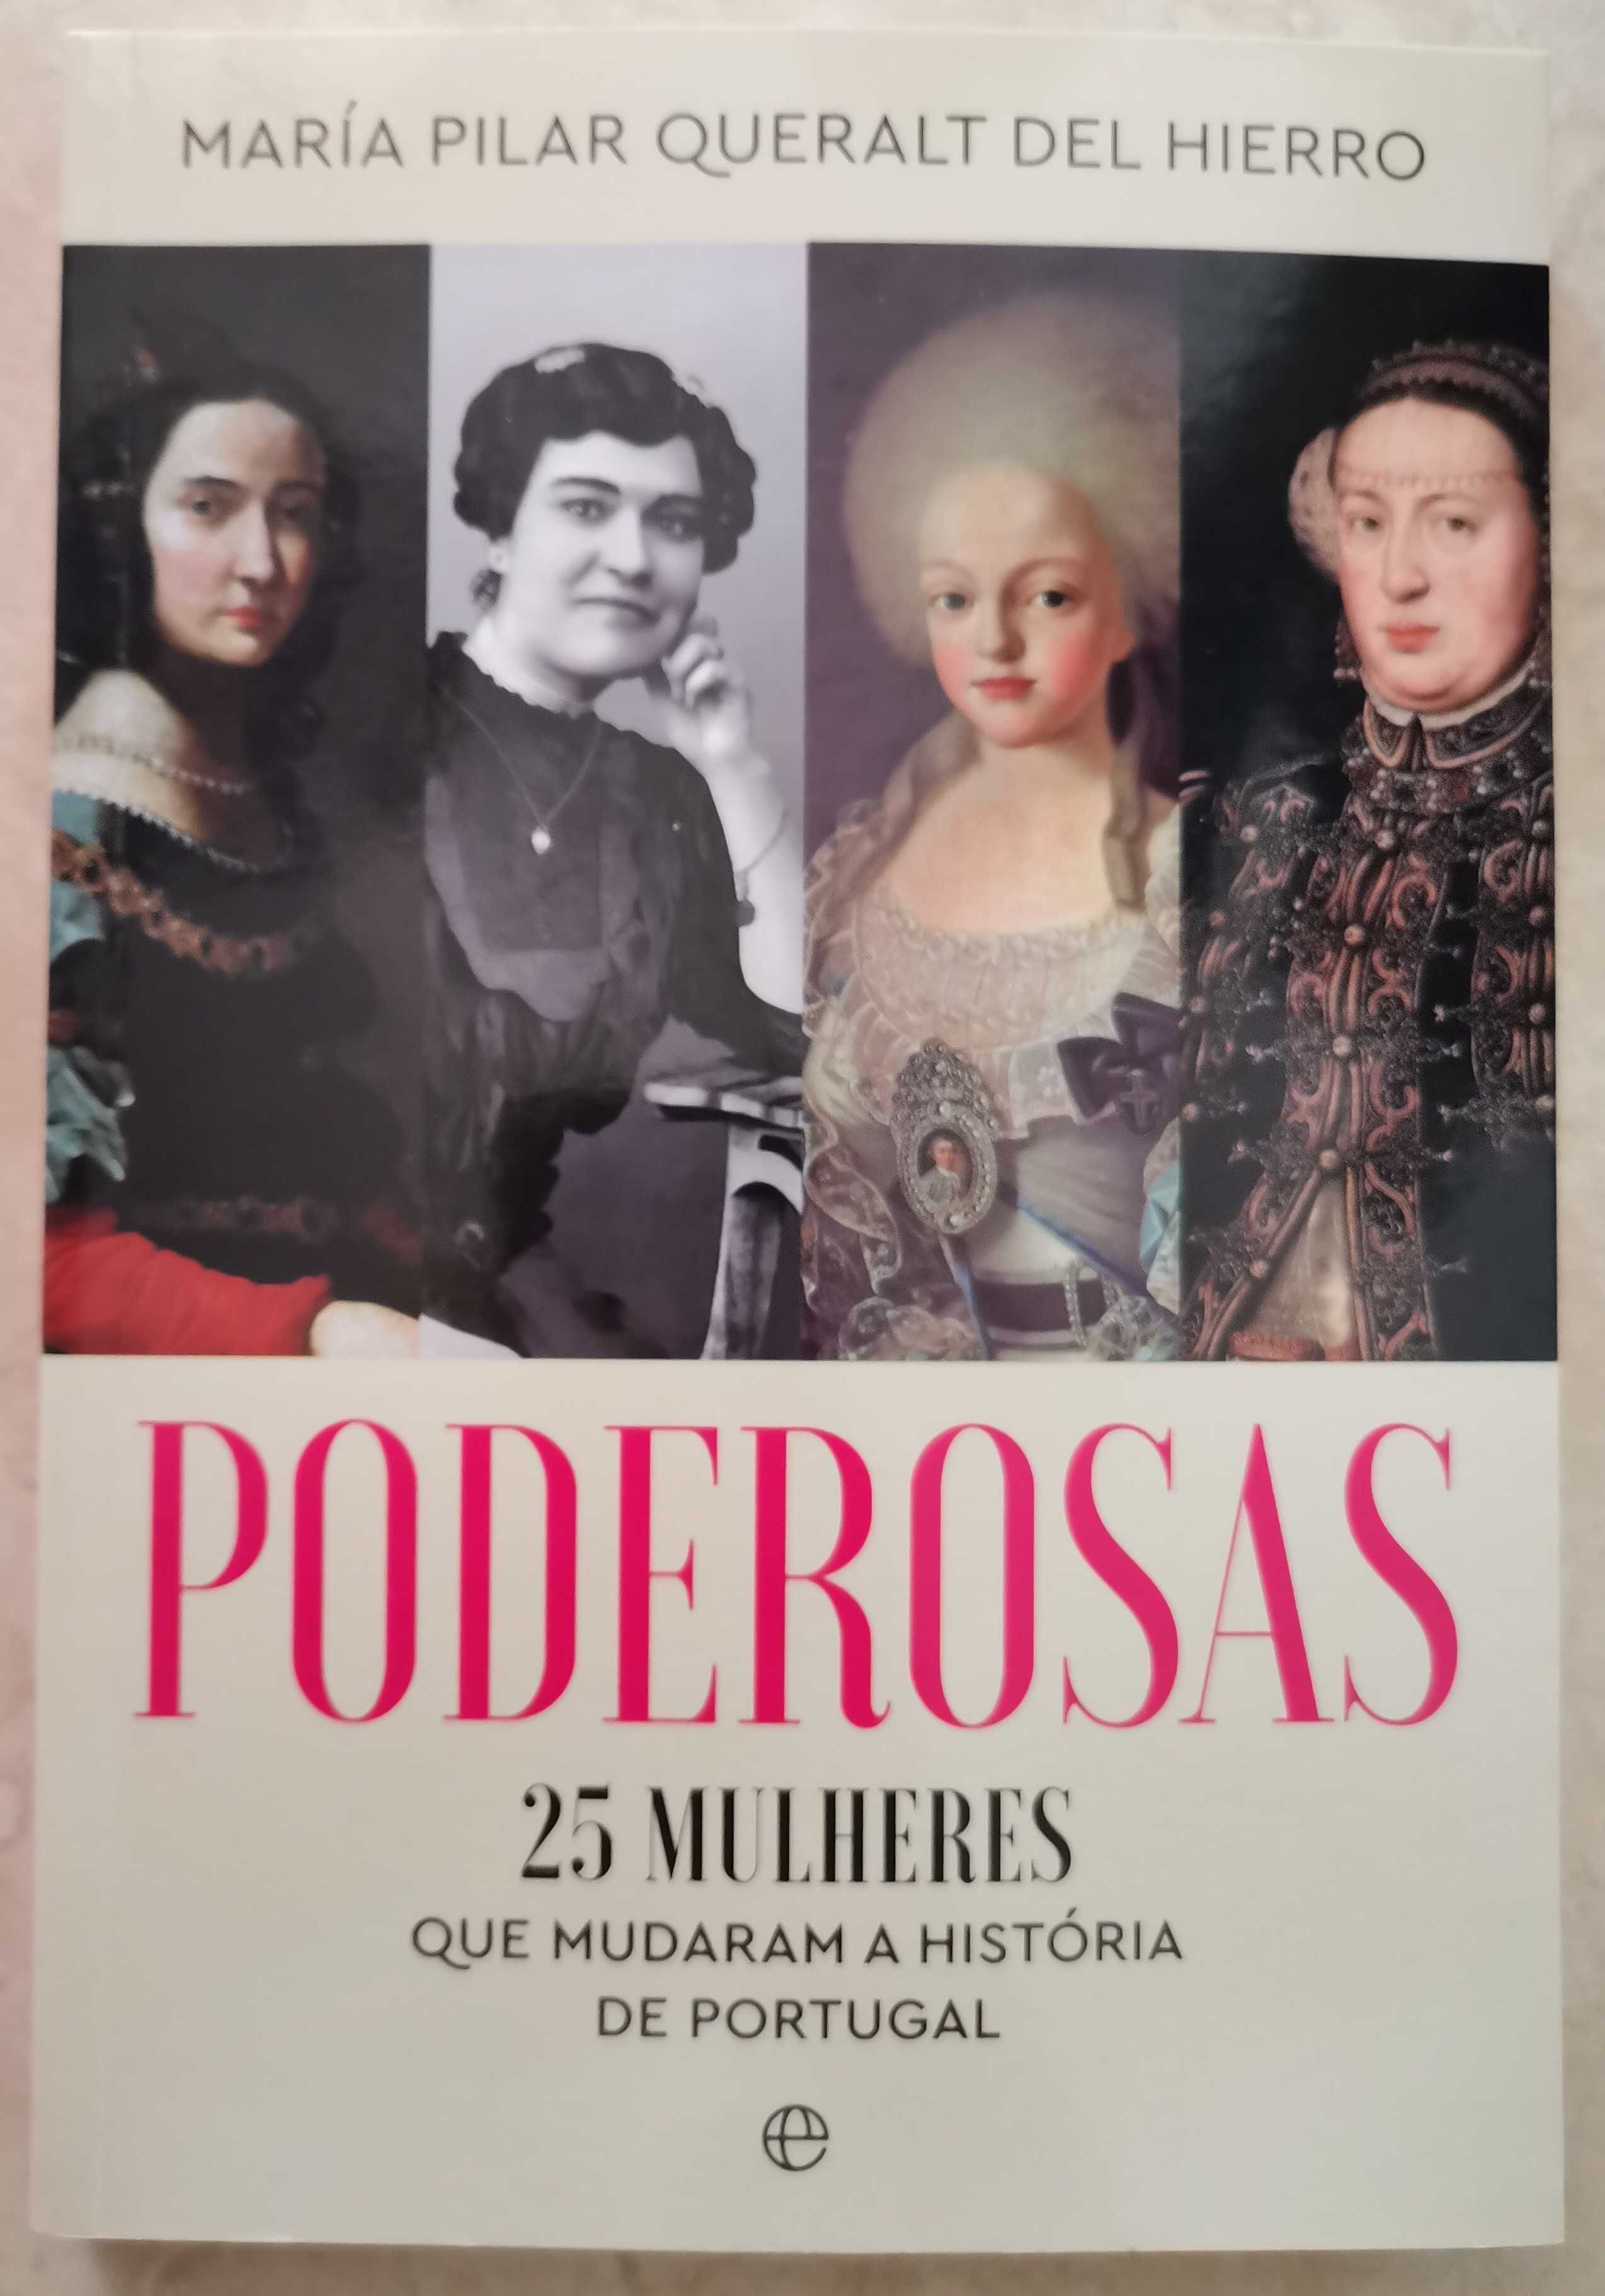 Portes Gr. - Poderosas
25 Mulheres que Mudaram a História de Portugal